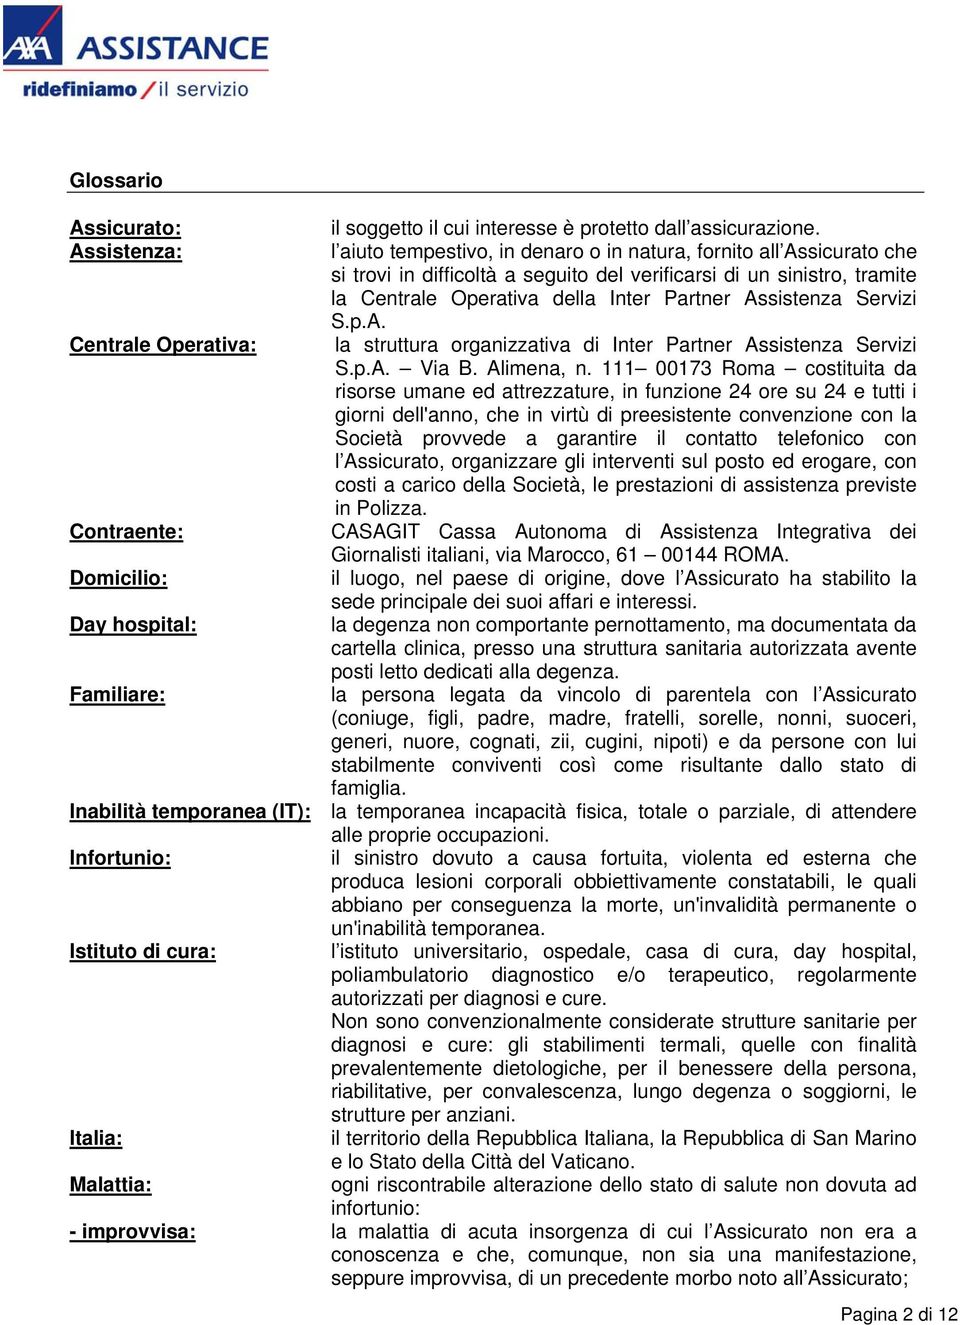 Assistenza Servizi S.p.A. Centrale Operativa: la struttura organizzativa di Inter Partner Assistenza Servizi S.p.A. Via B. Alimena, n.